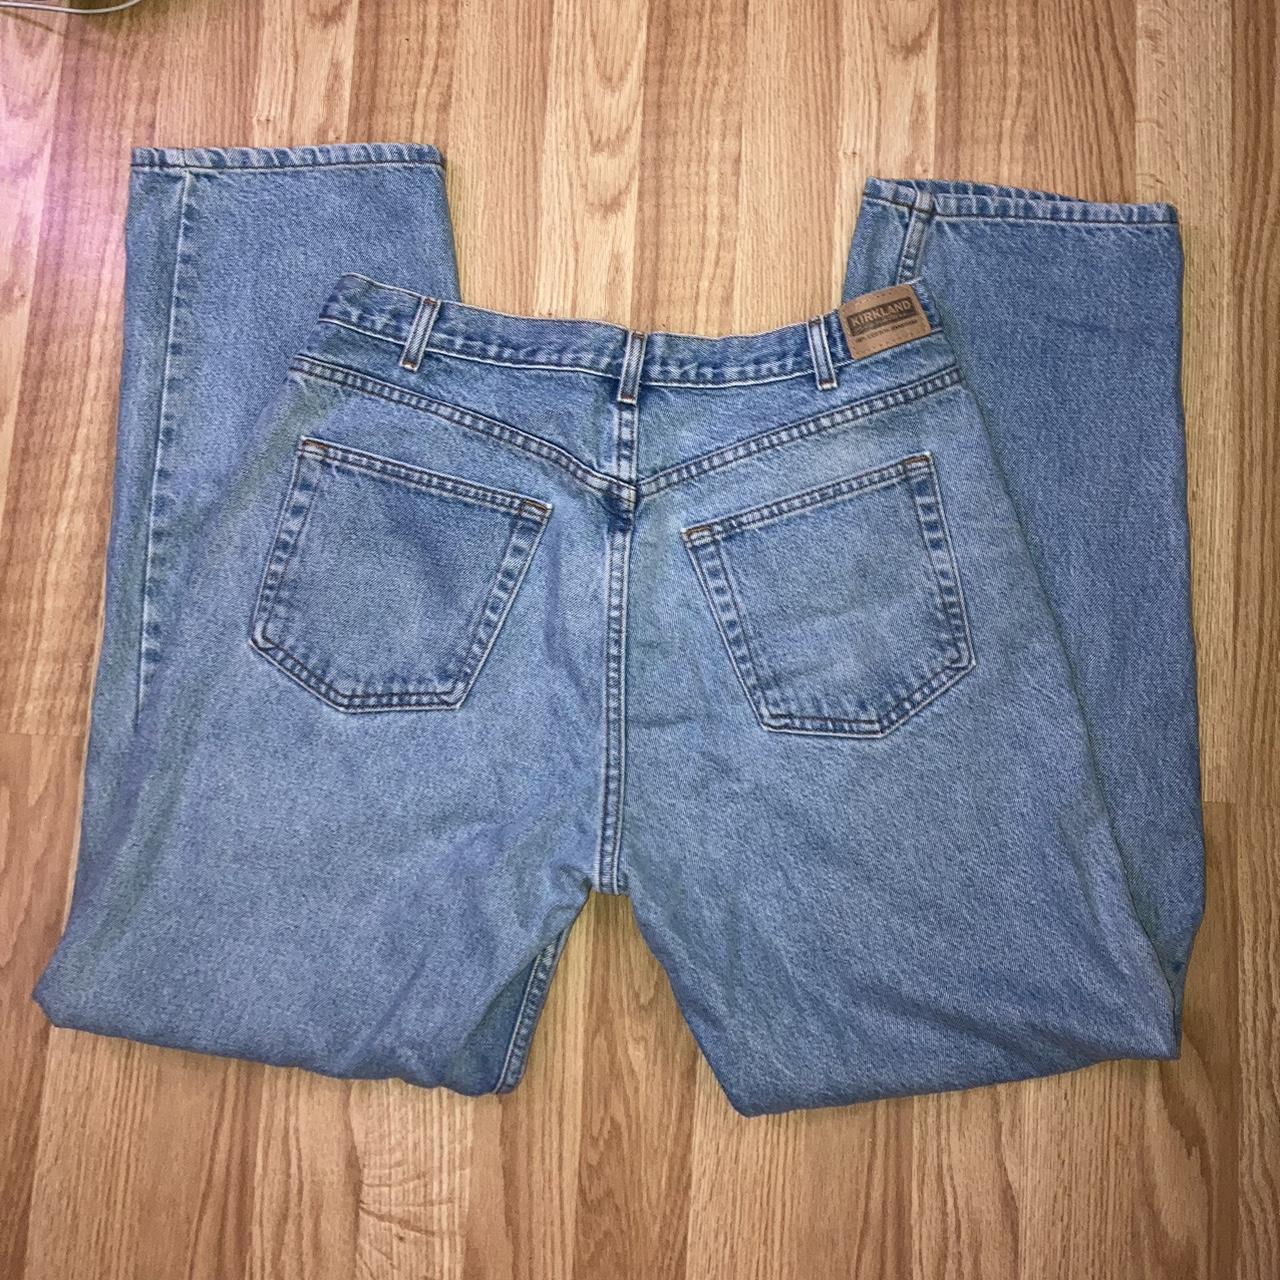 Costco Men's Jeans (2)